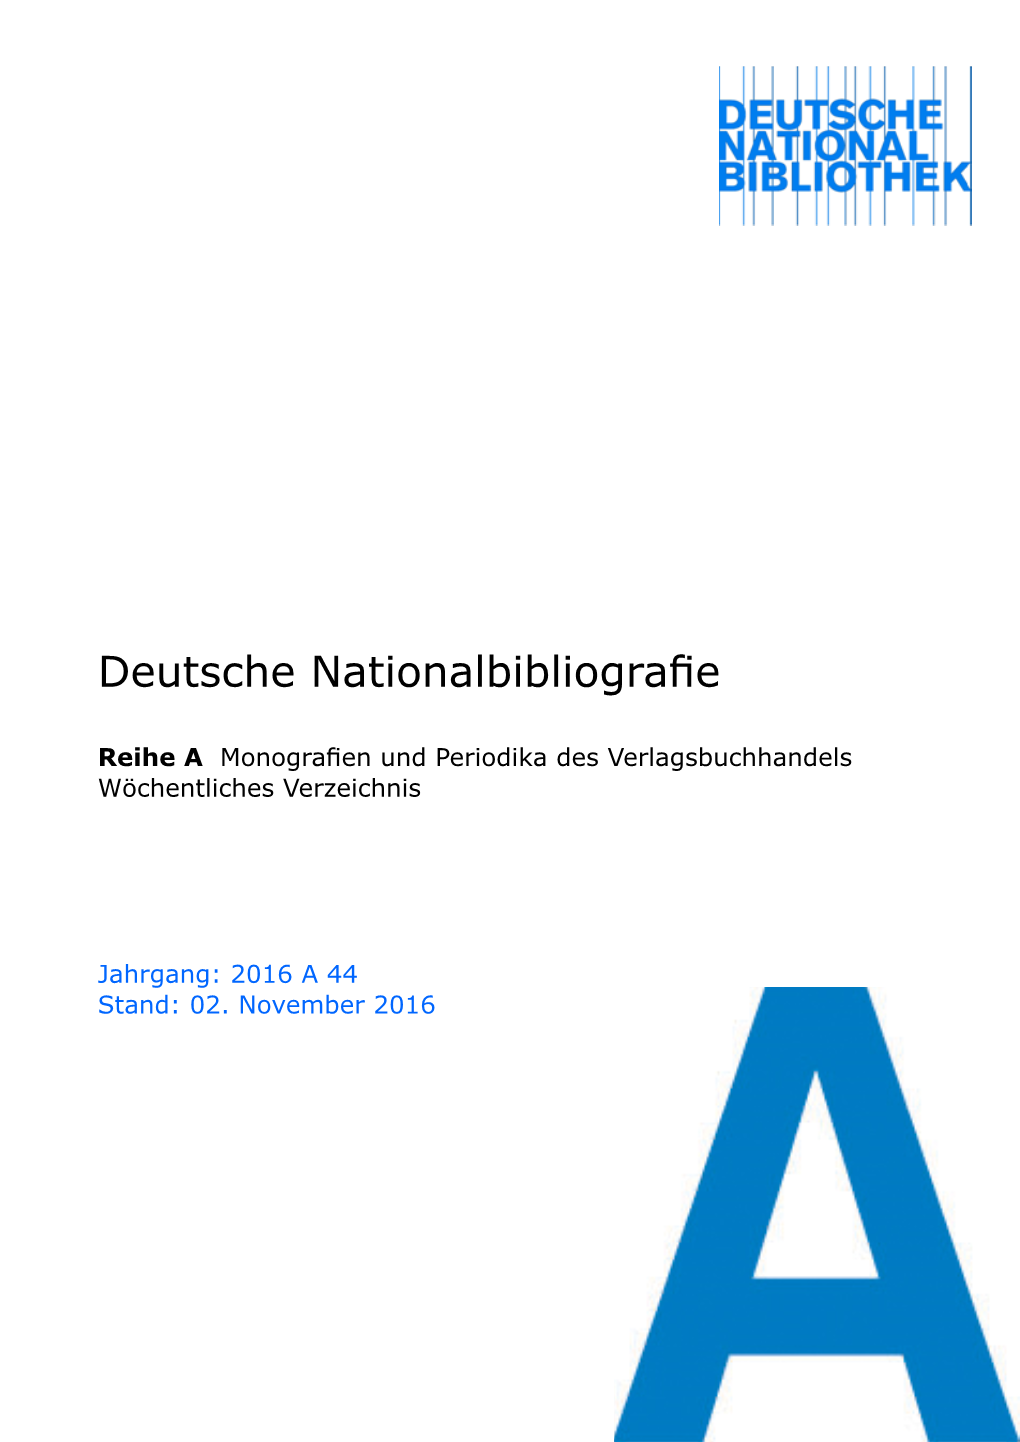 Deutsche Nationalbibliografie 2016 a 44